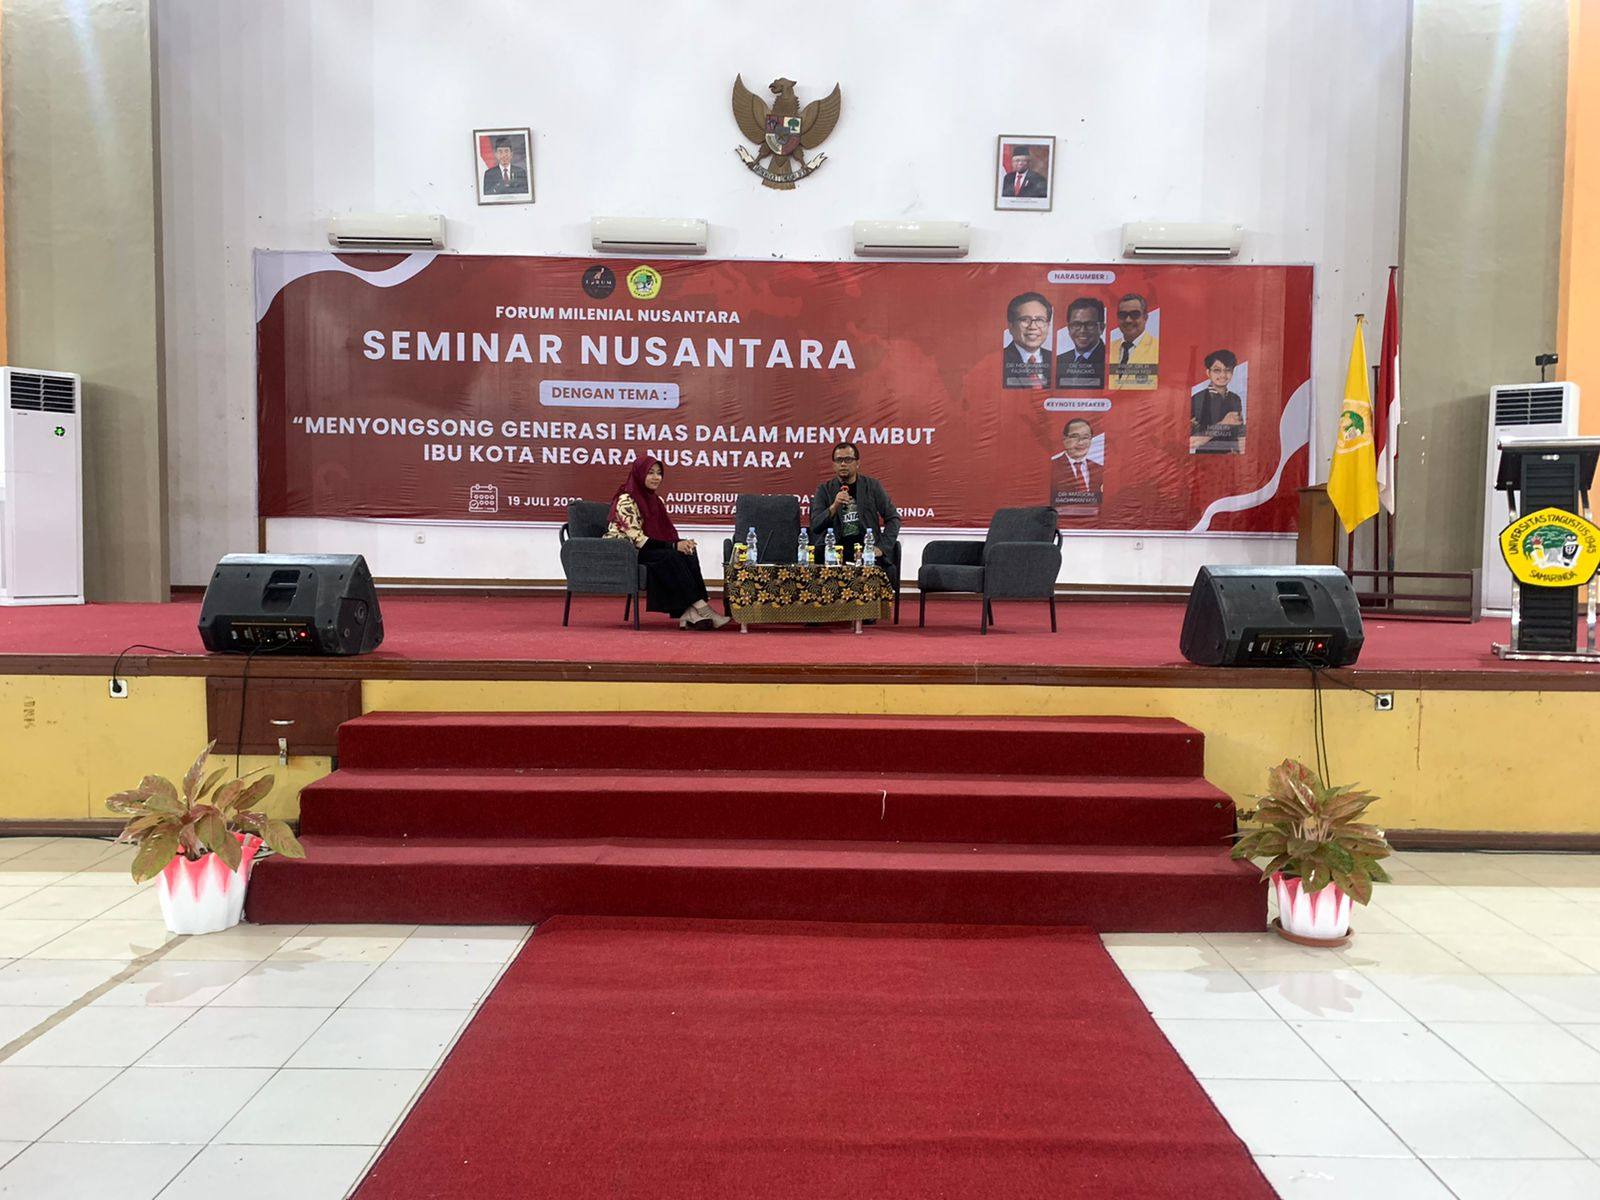 Gelar Seminar Nusantara, FMN Harap Keberadaan IKN Dimanfaatkan Pemuda untuk Tingkatkan Perekonomian dan Pembangunan Daerah